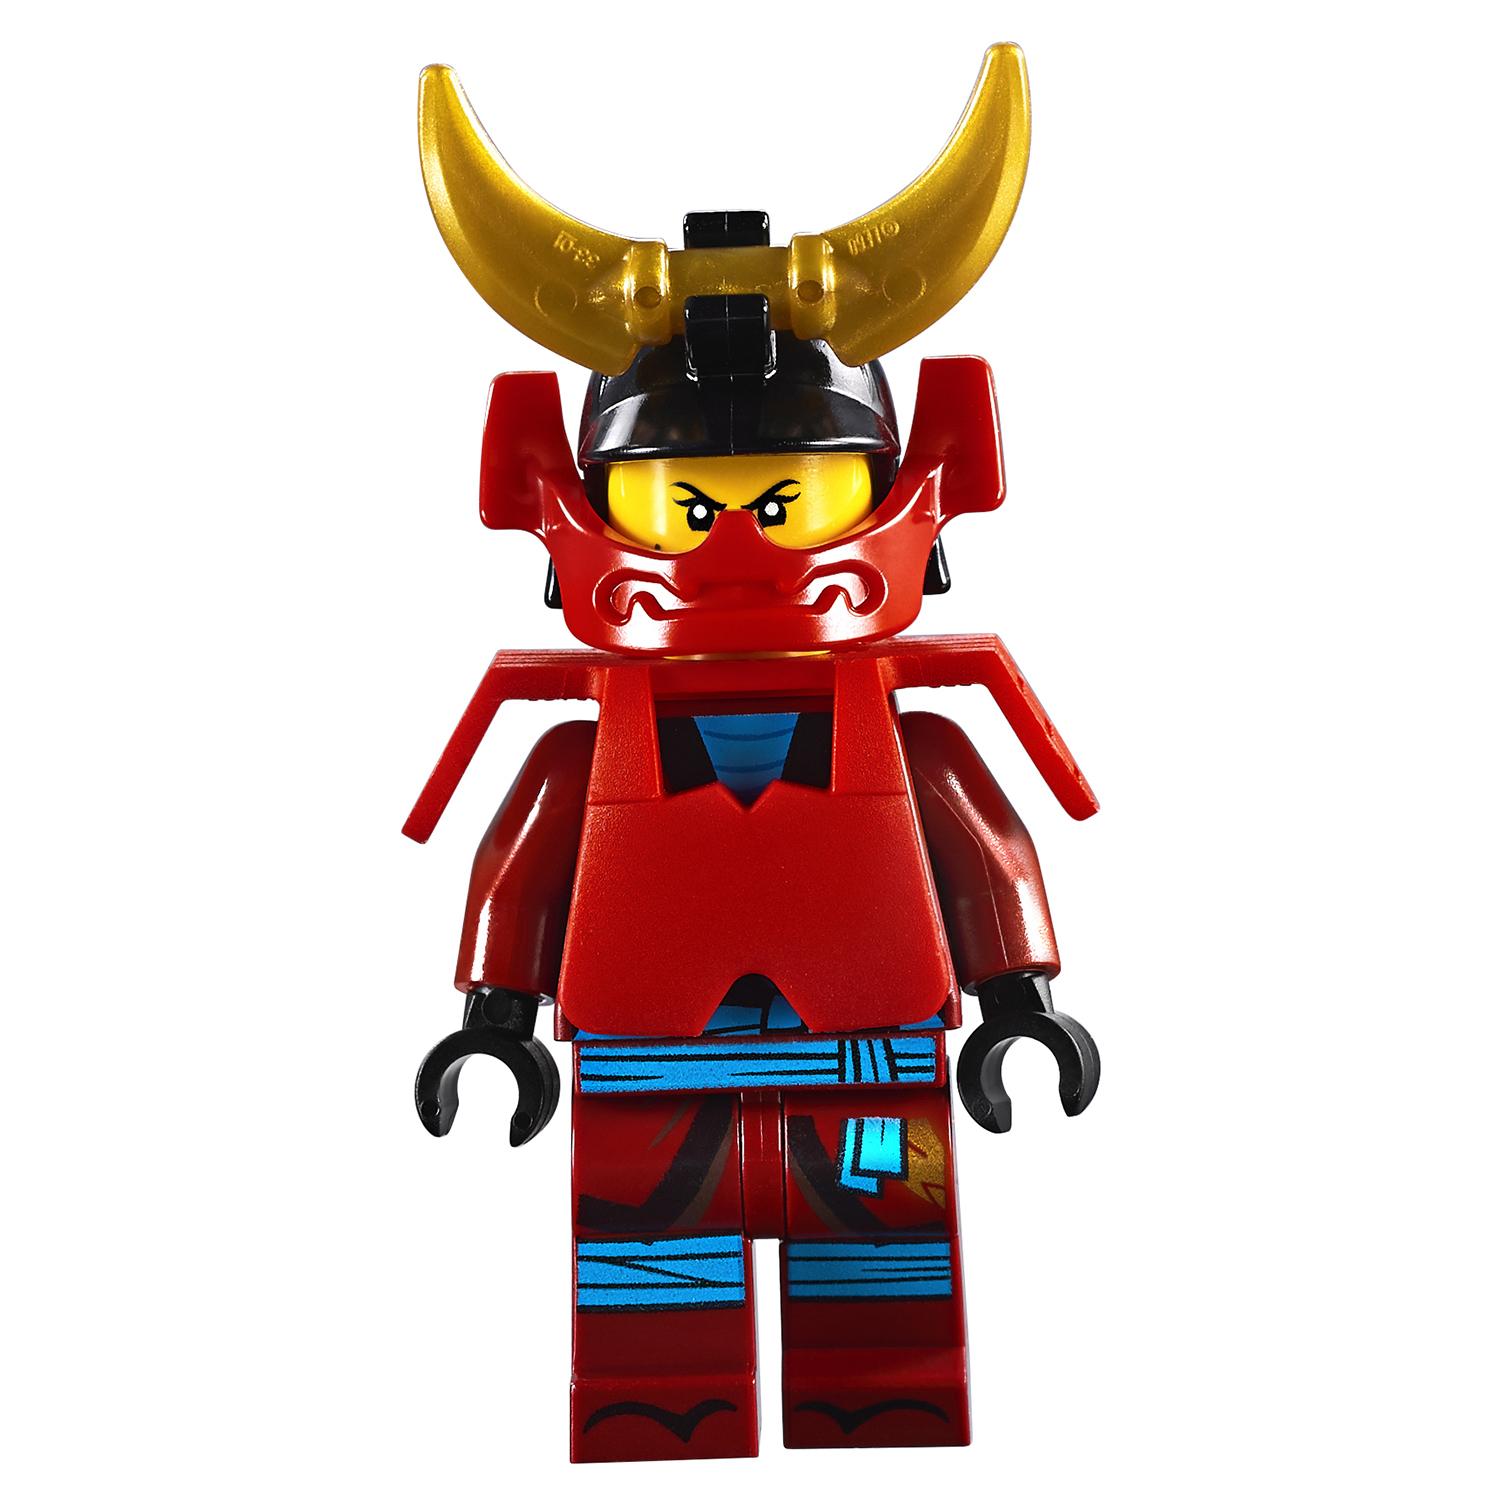 Конструктор LEGO Ninjago - Обучение в монастыре